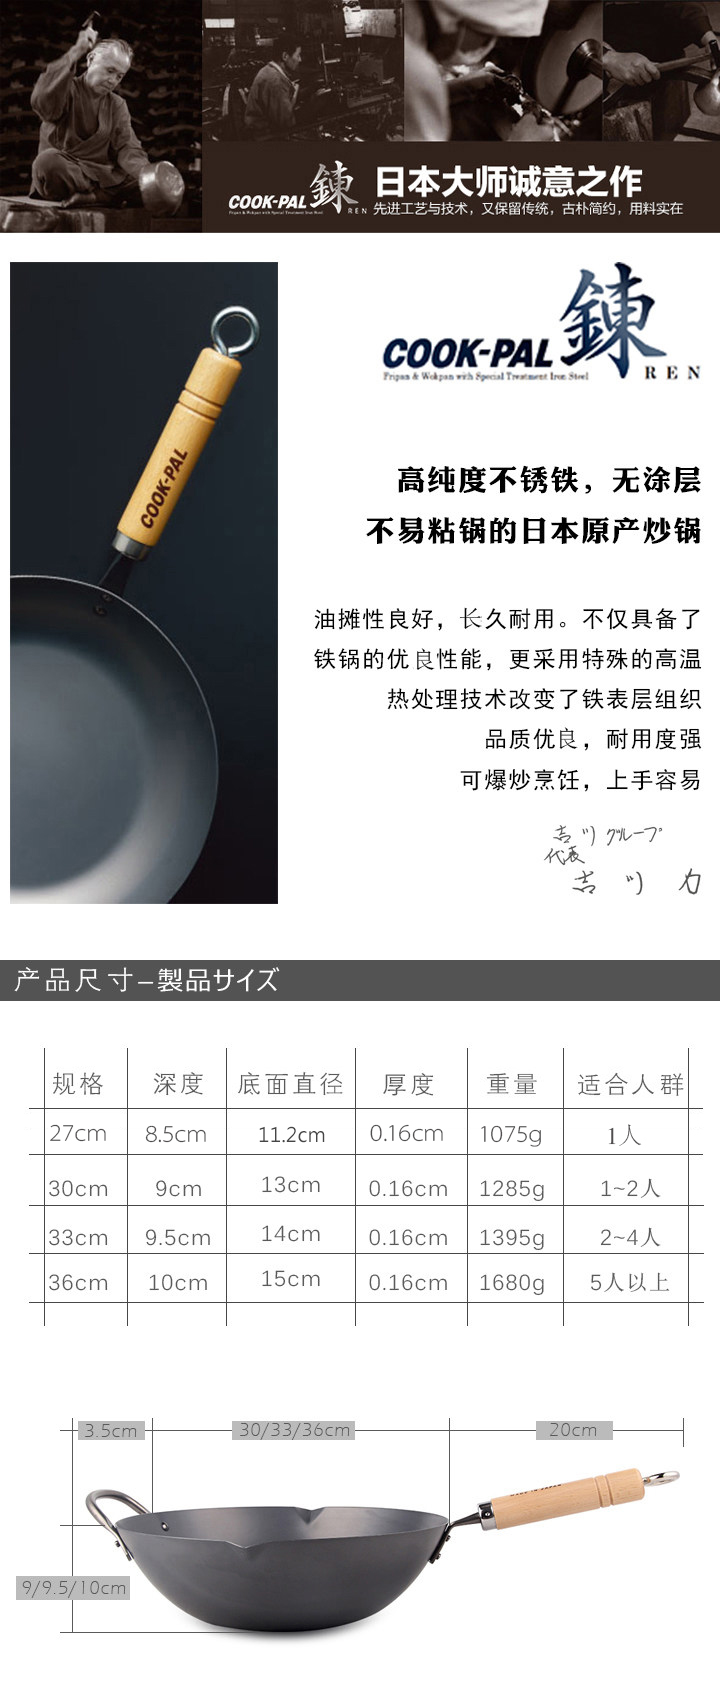 CookPal Ren Beijing 33cm Wok Made in Japan 1